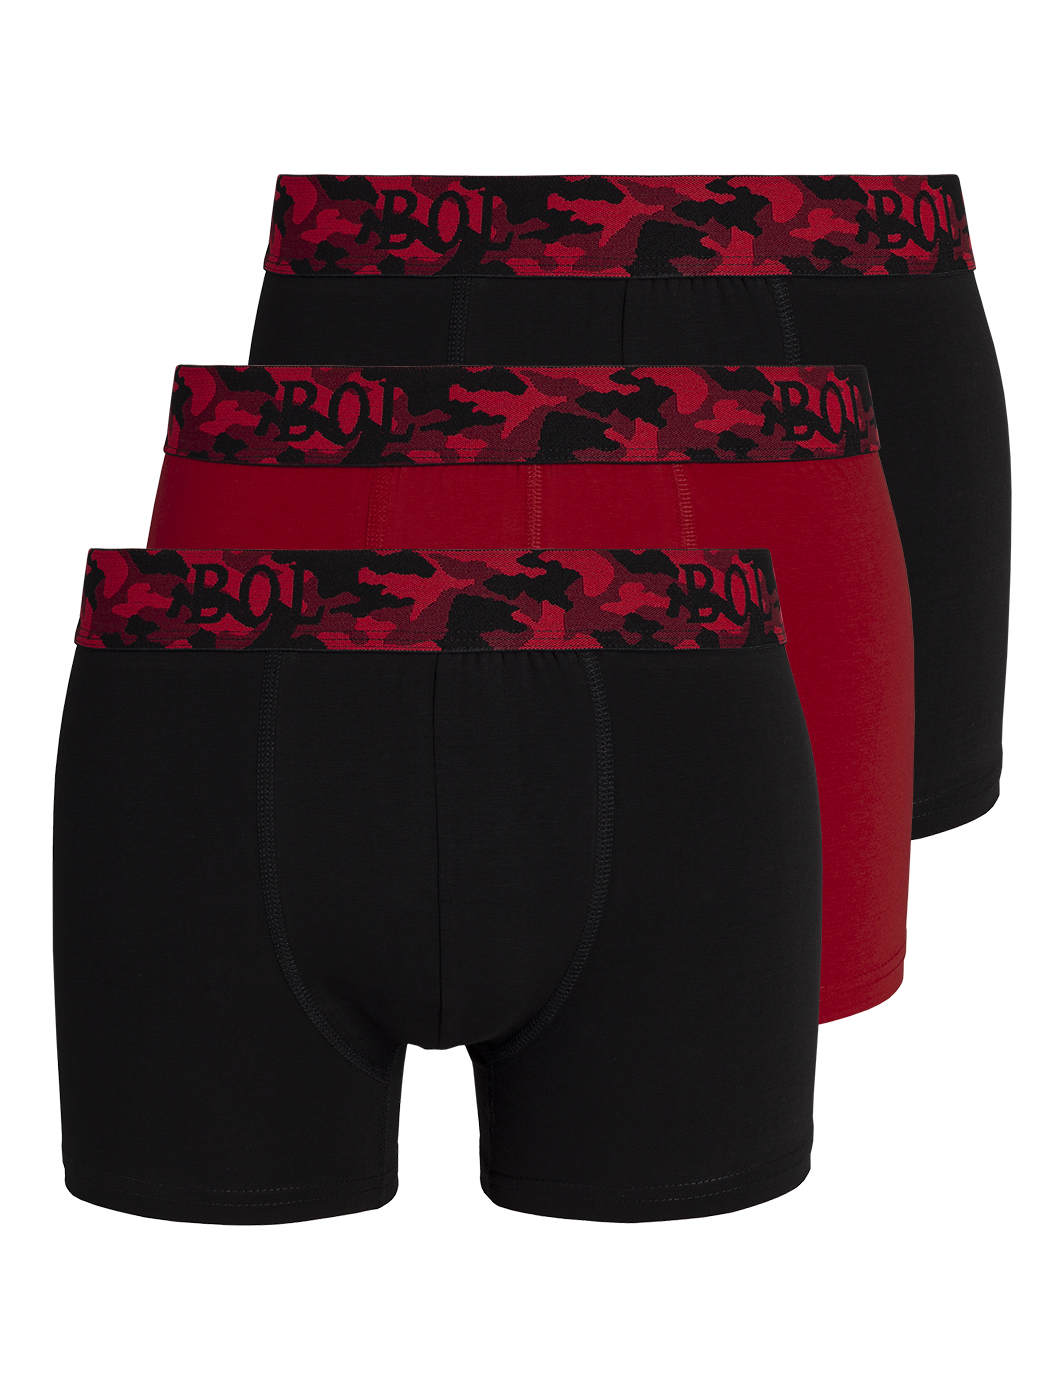 Комплект трусов мужских BOL Men's 178 черных; красных 2XL